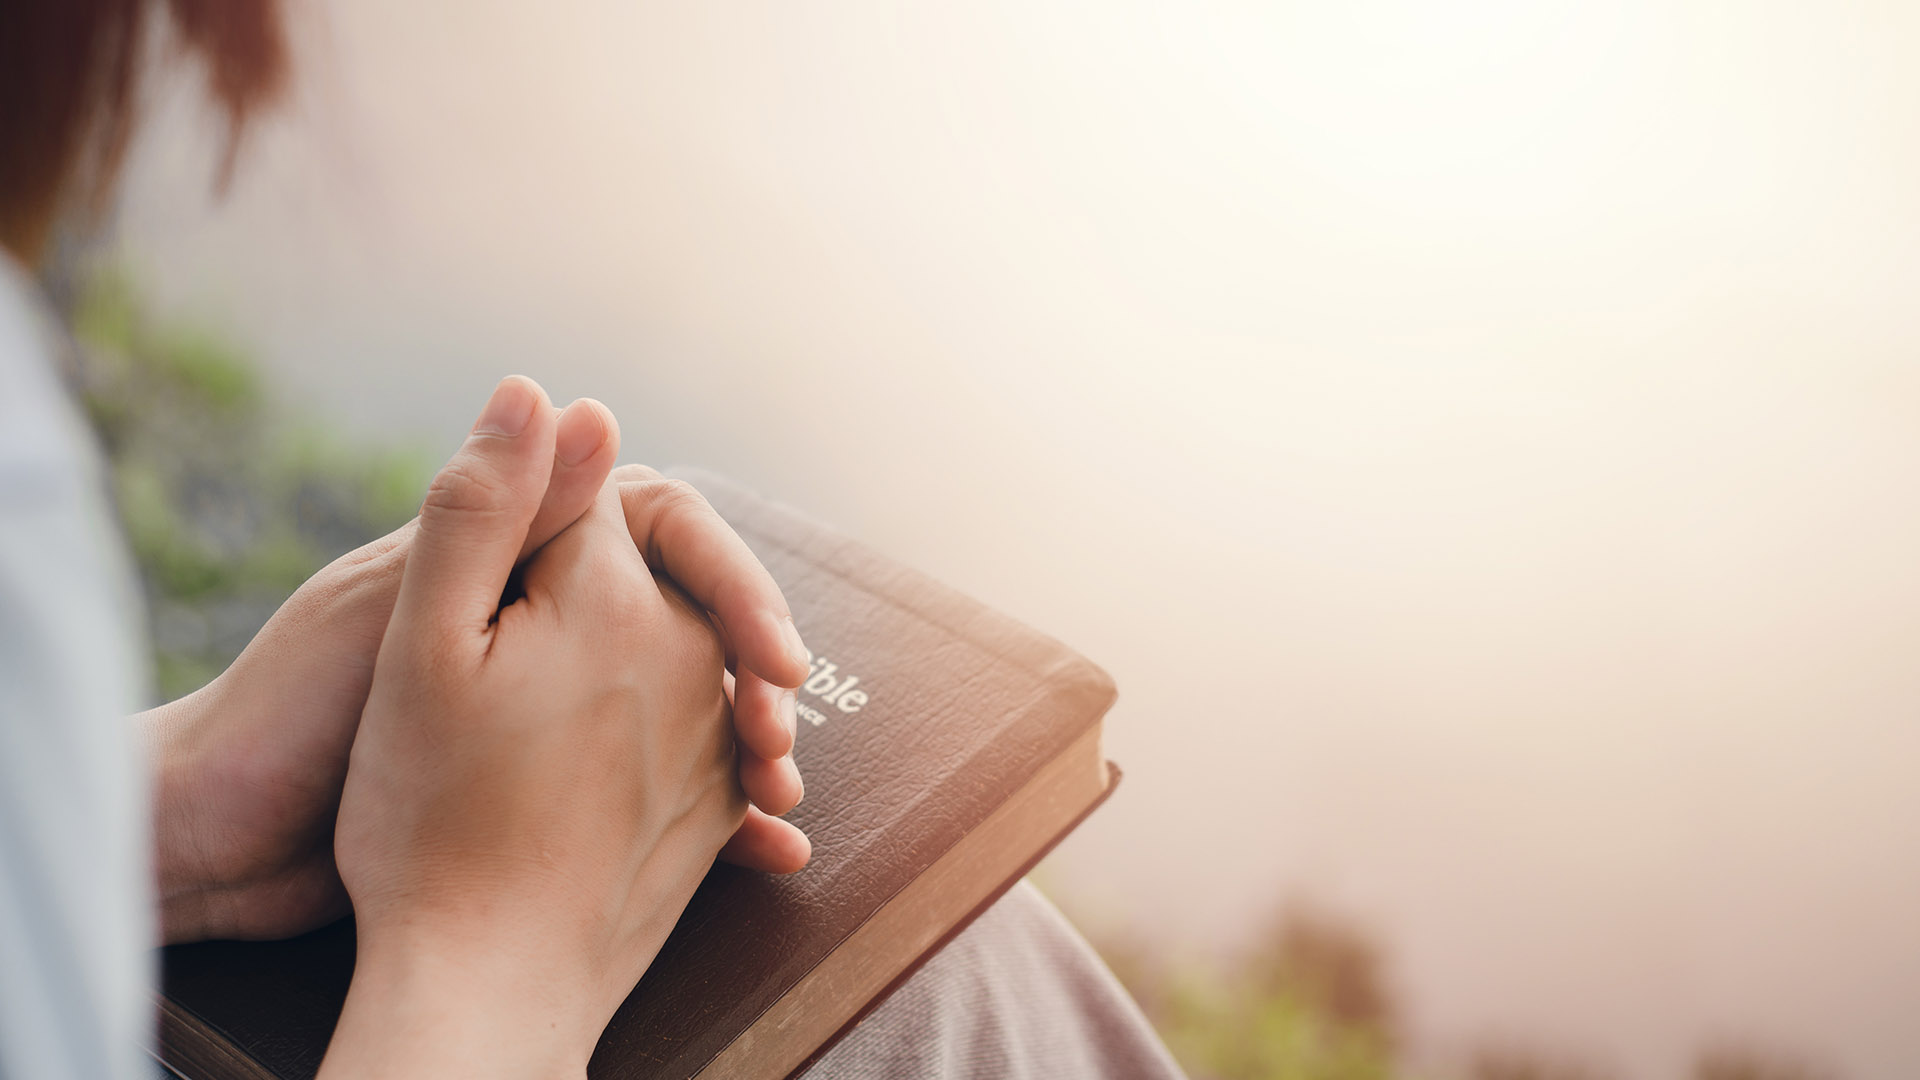 Woman praying holding Bible